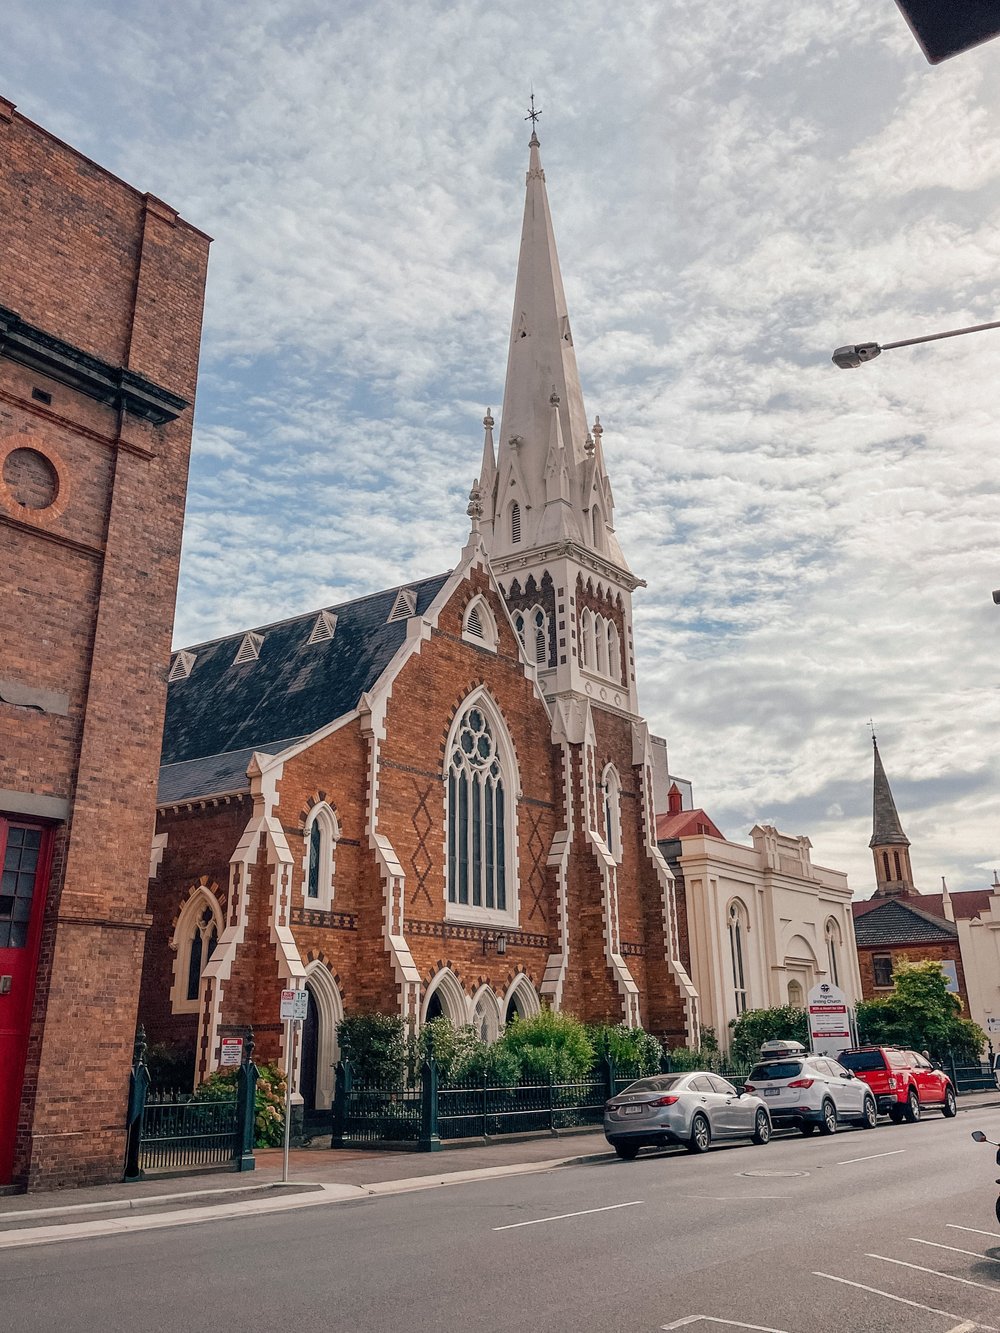 Stunning church - Launceston - Tasmania - Australia